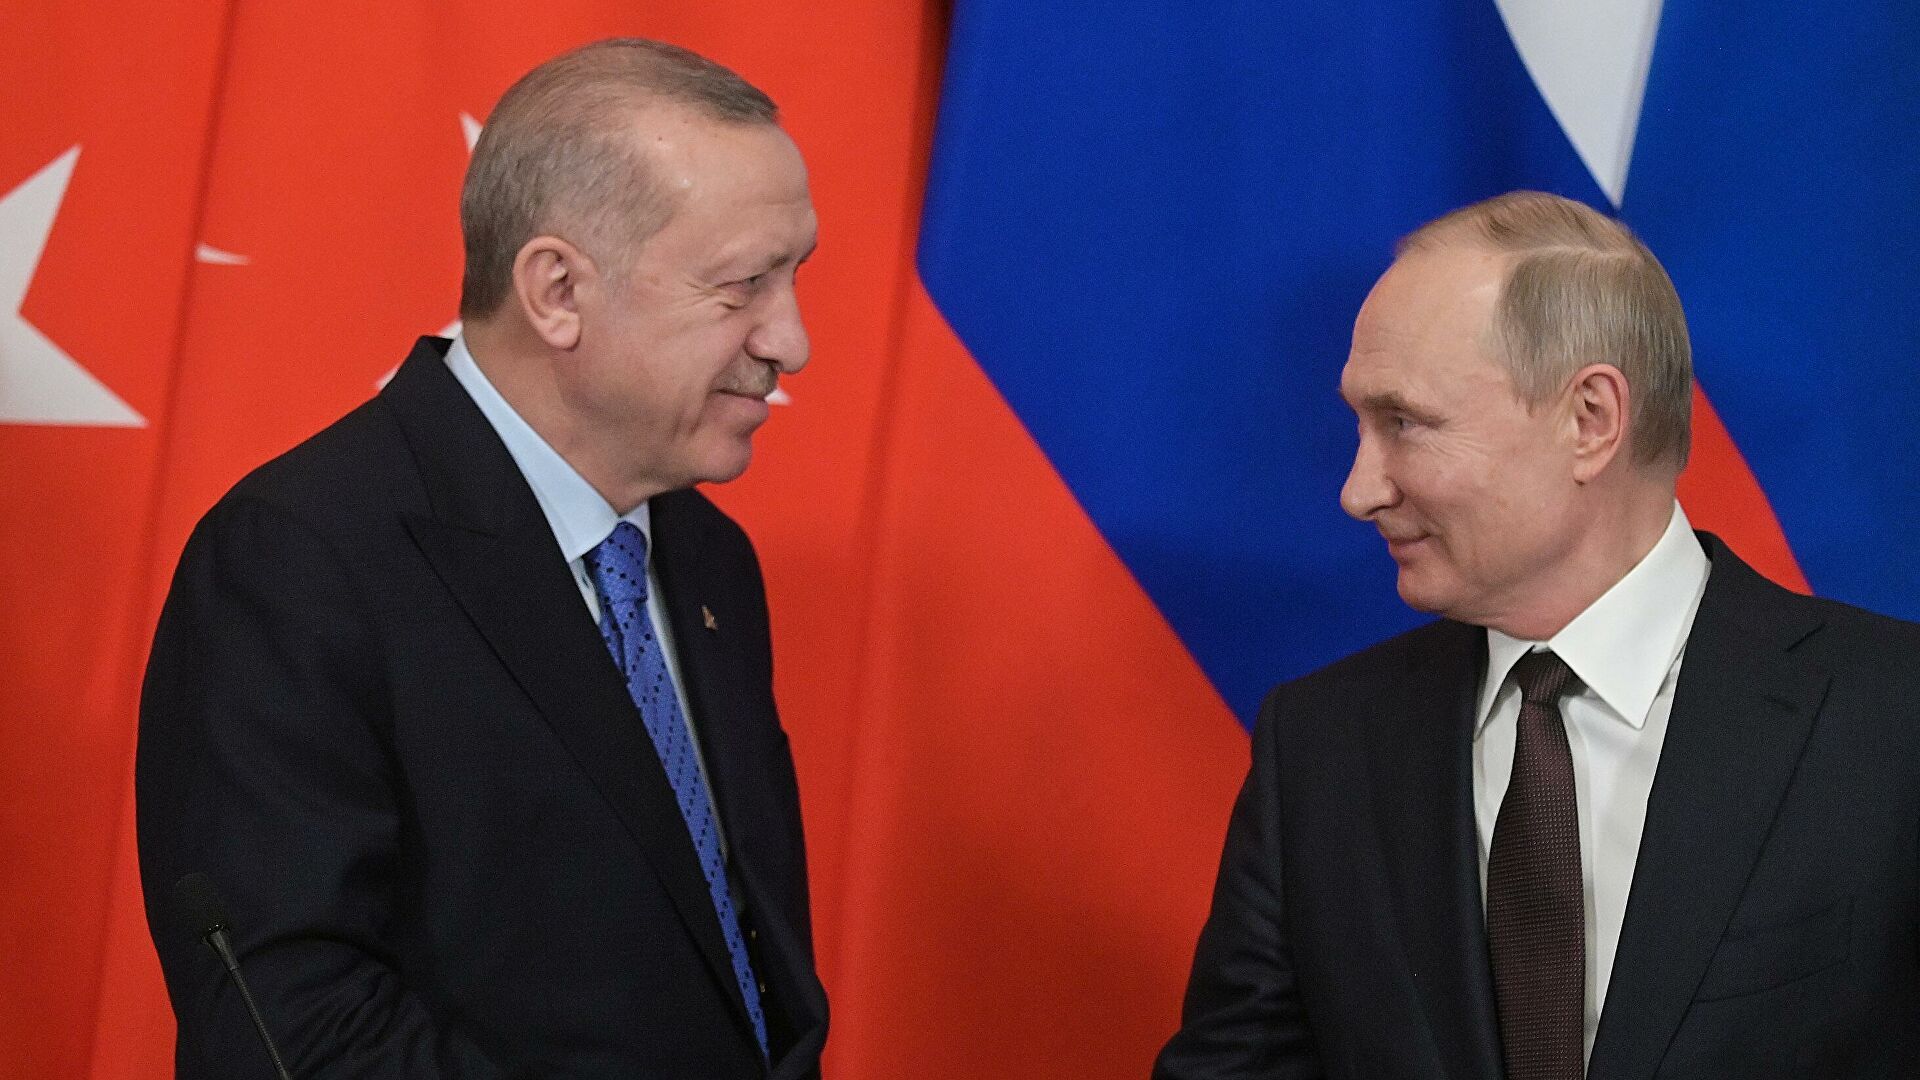  Турция делает Россию беднее